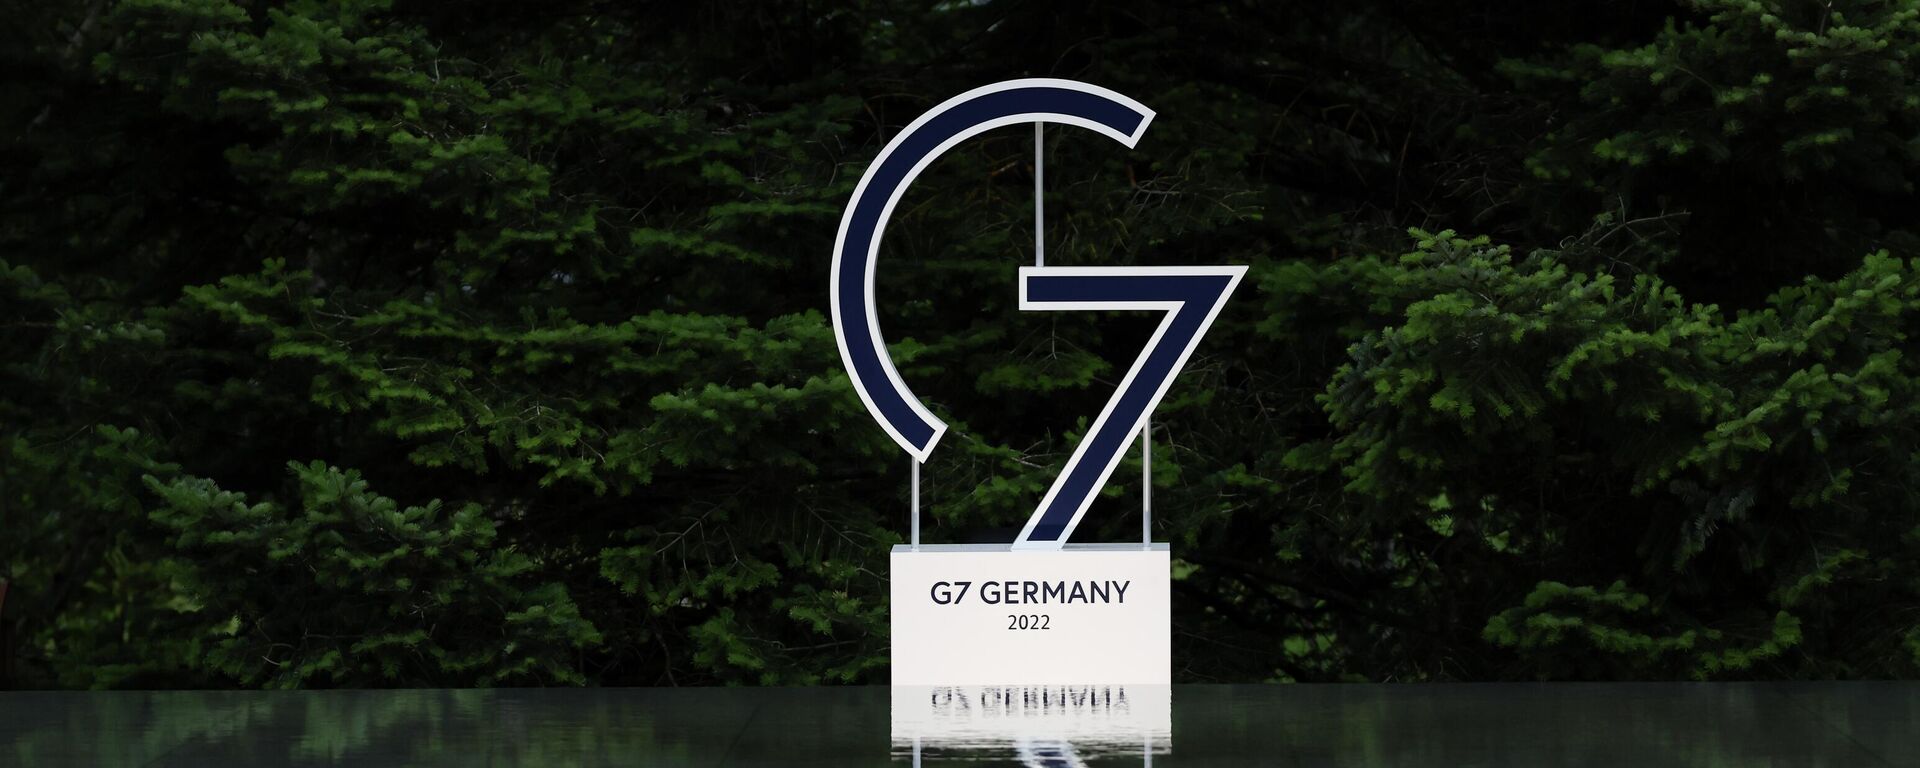 G7のロゴ - Sputnik 日本, 1920, 23.12.2022